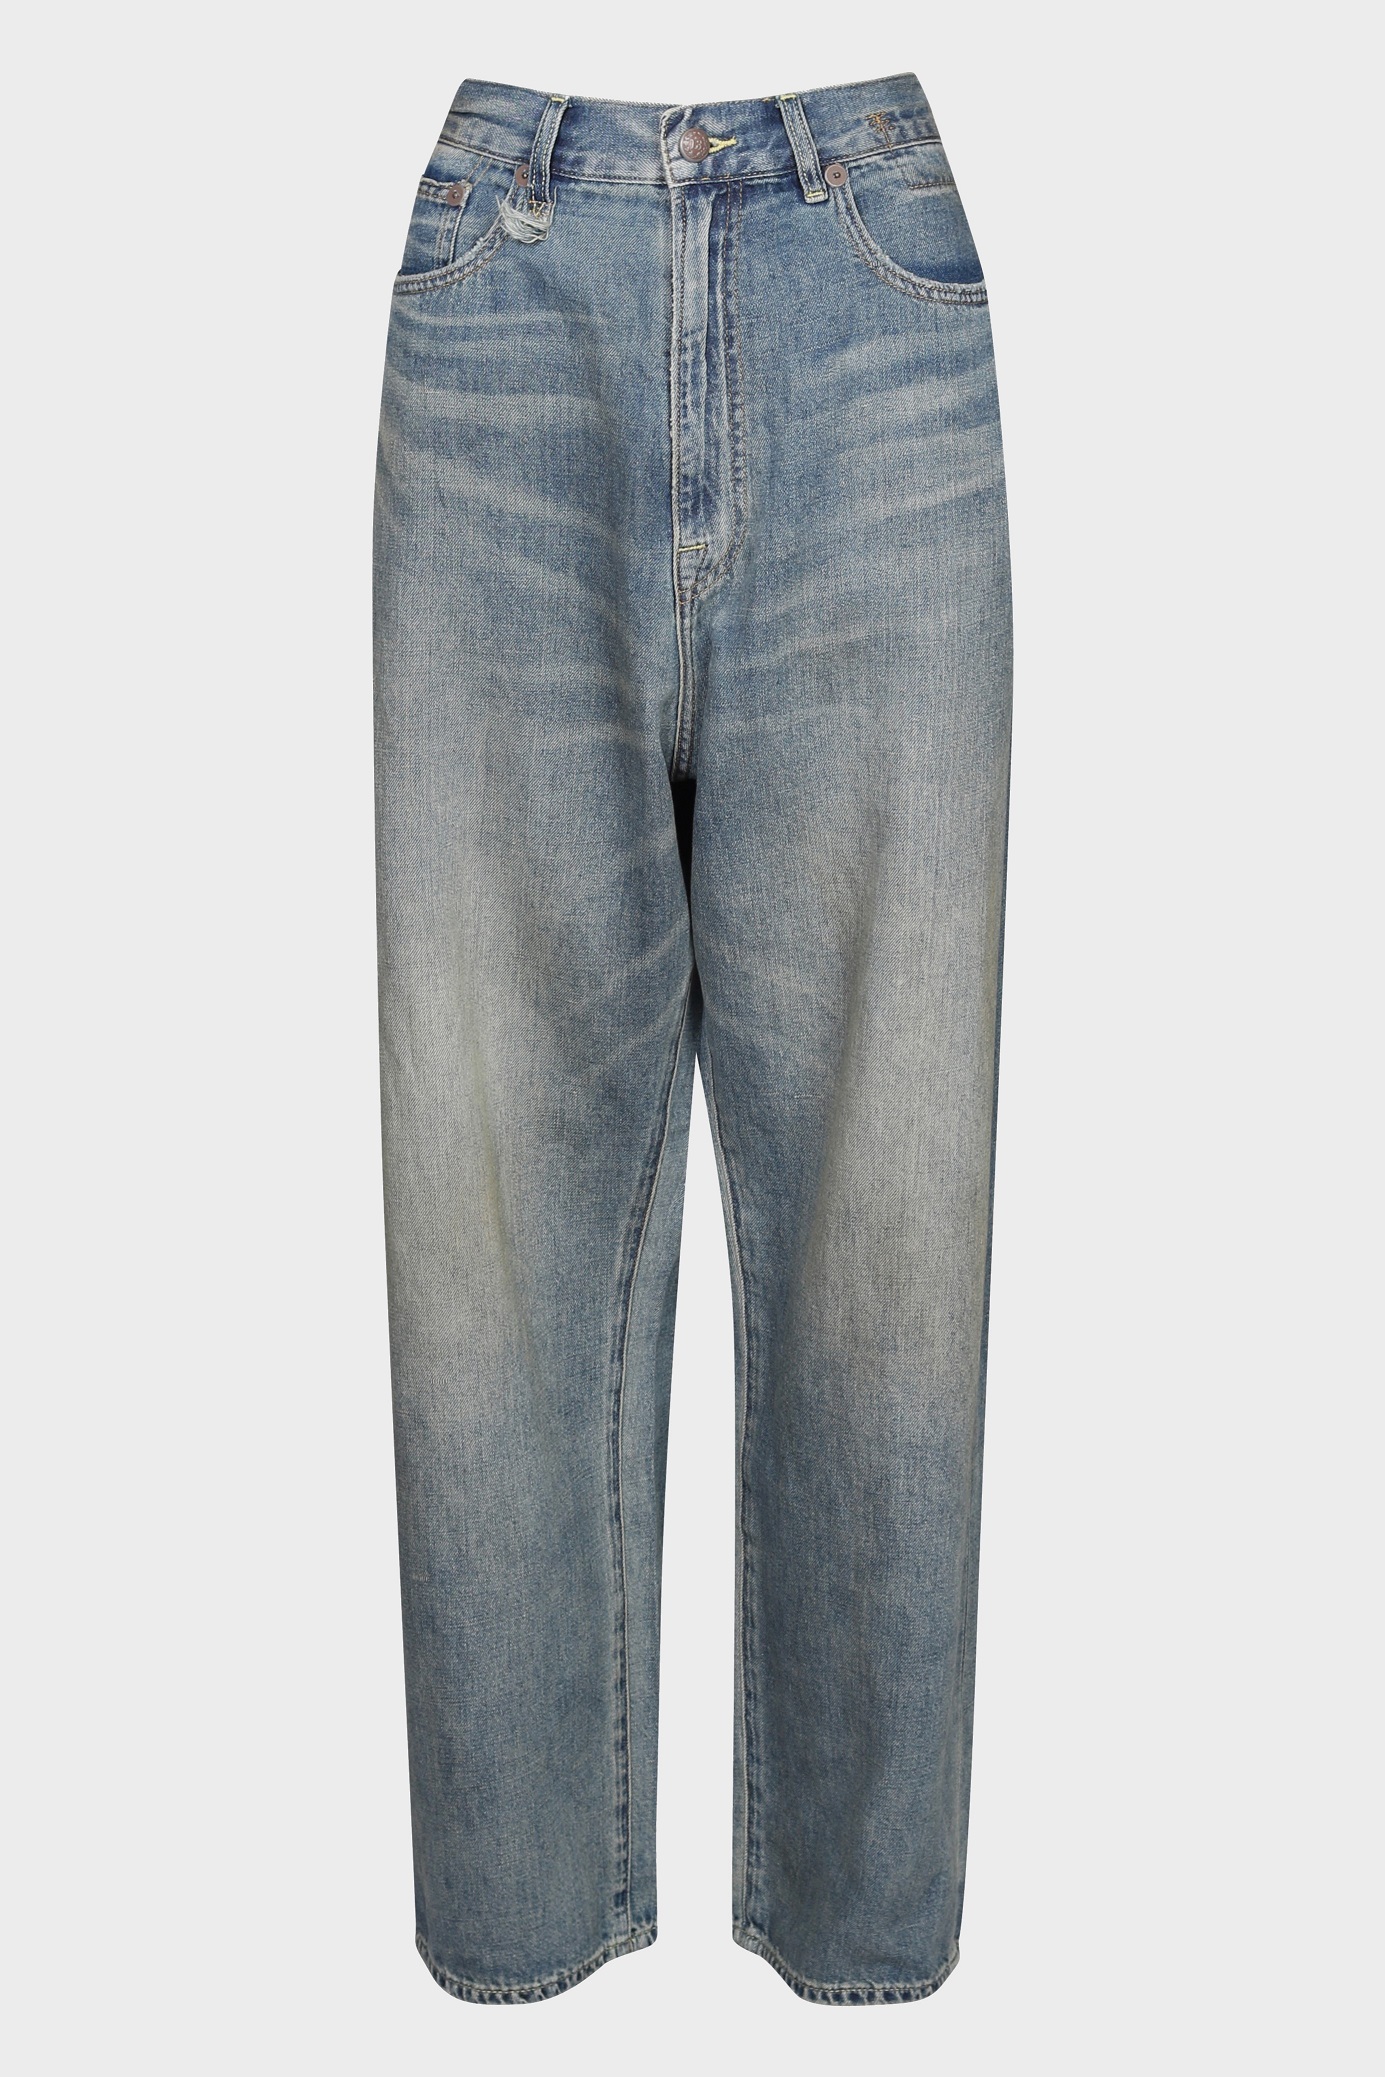 R13 Venti Jeans in Weber Linen Indigo